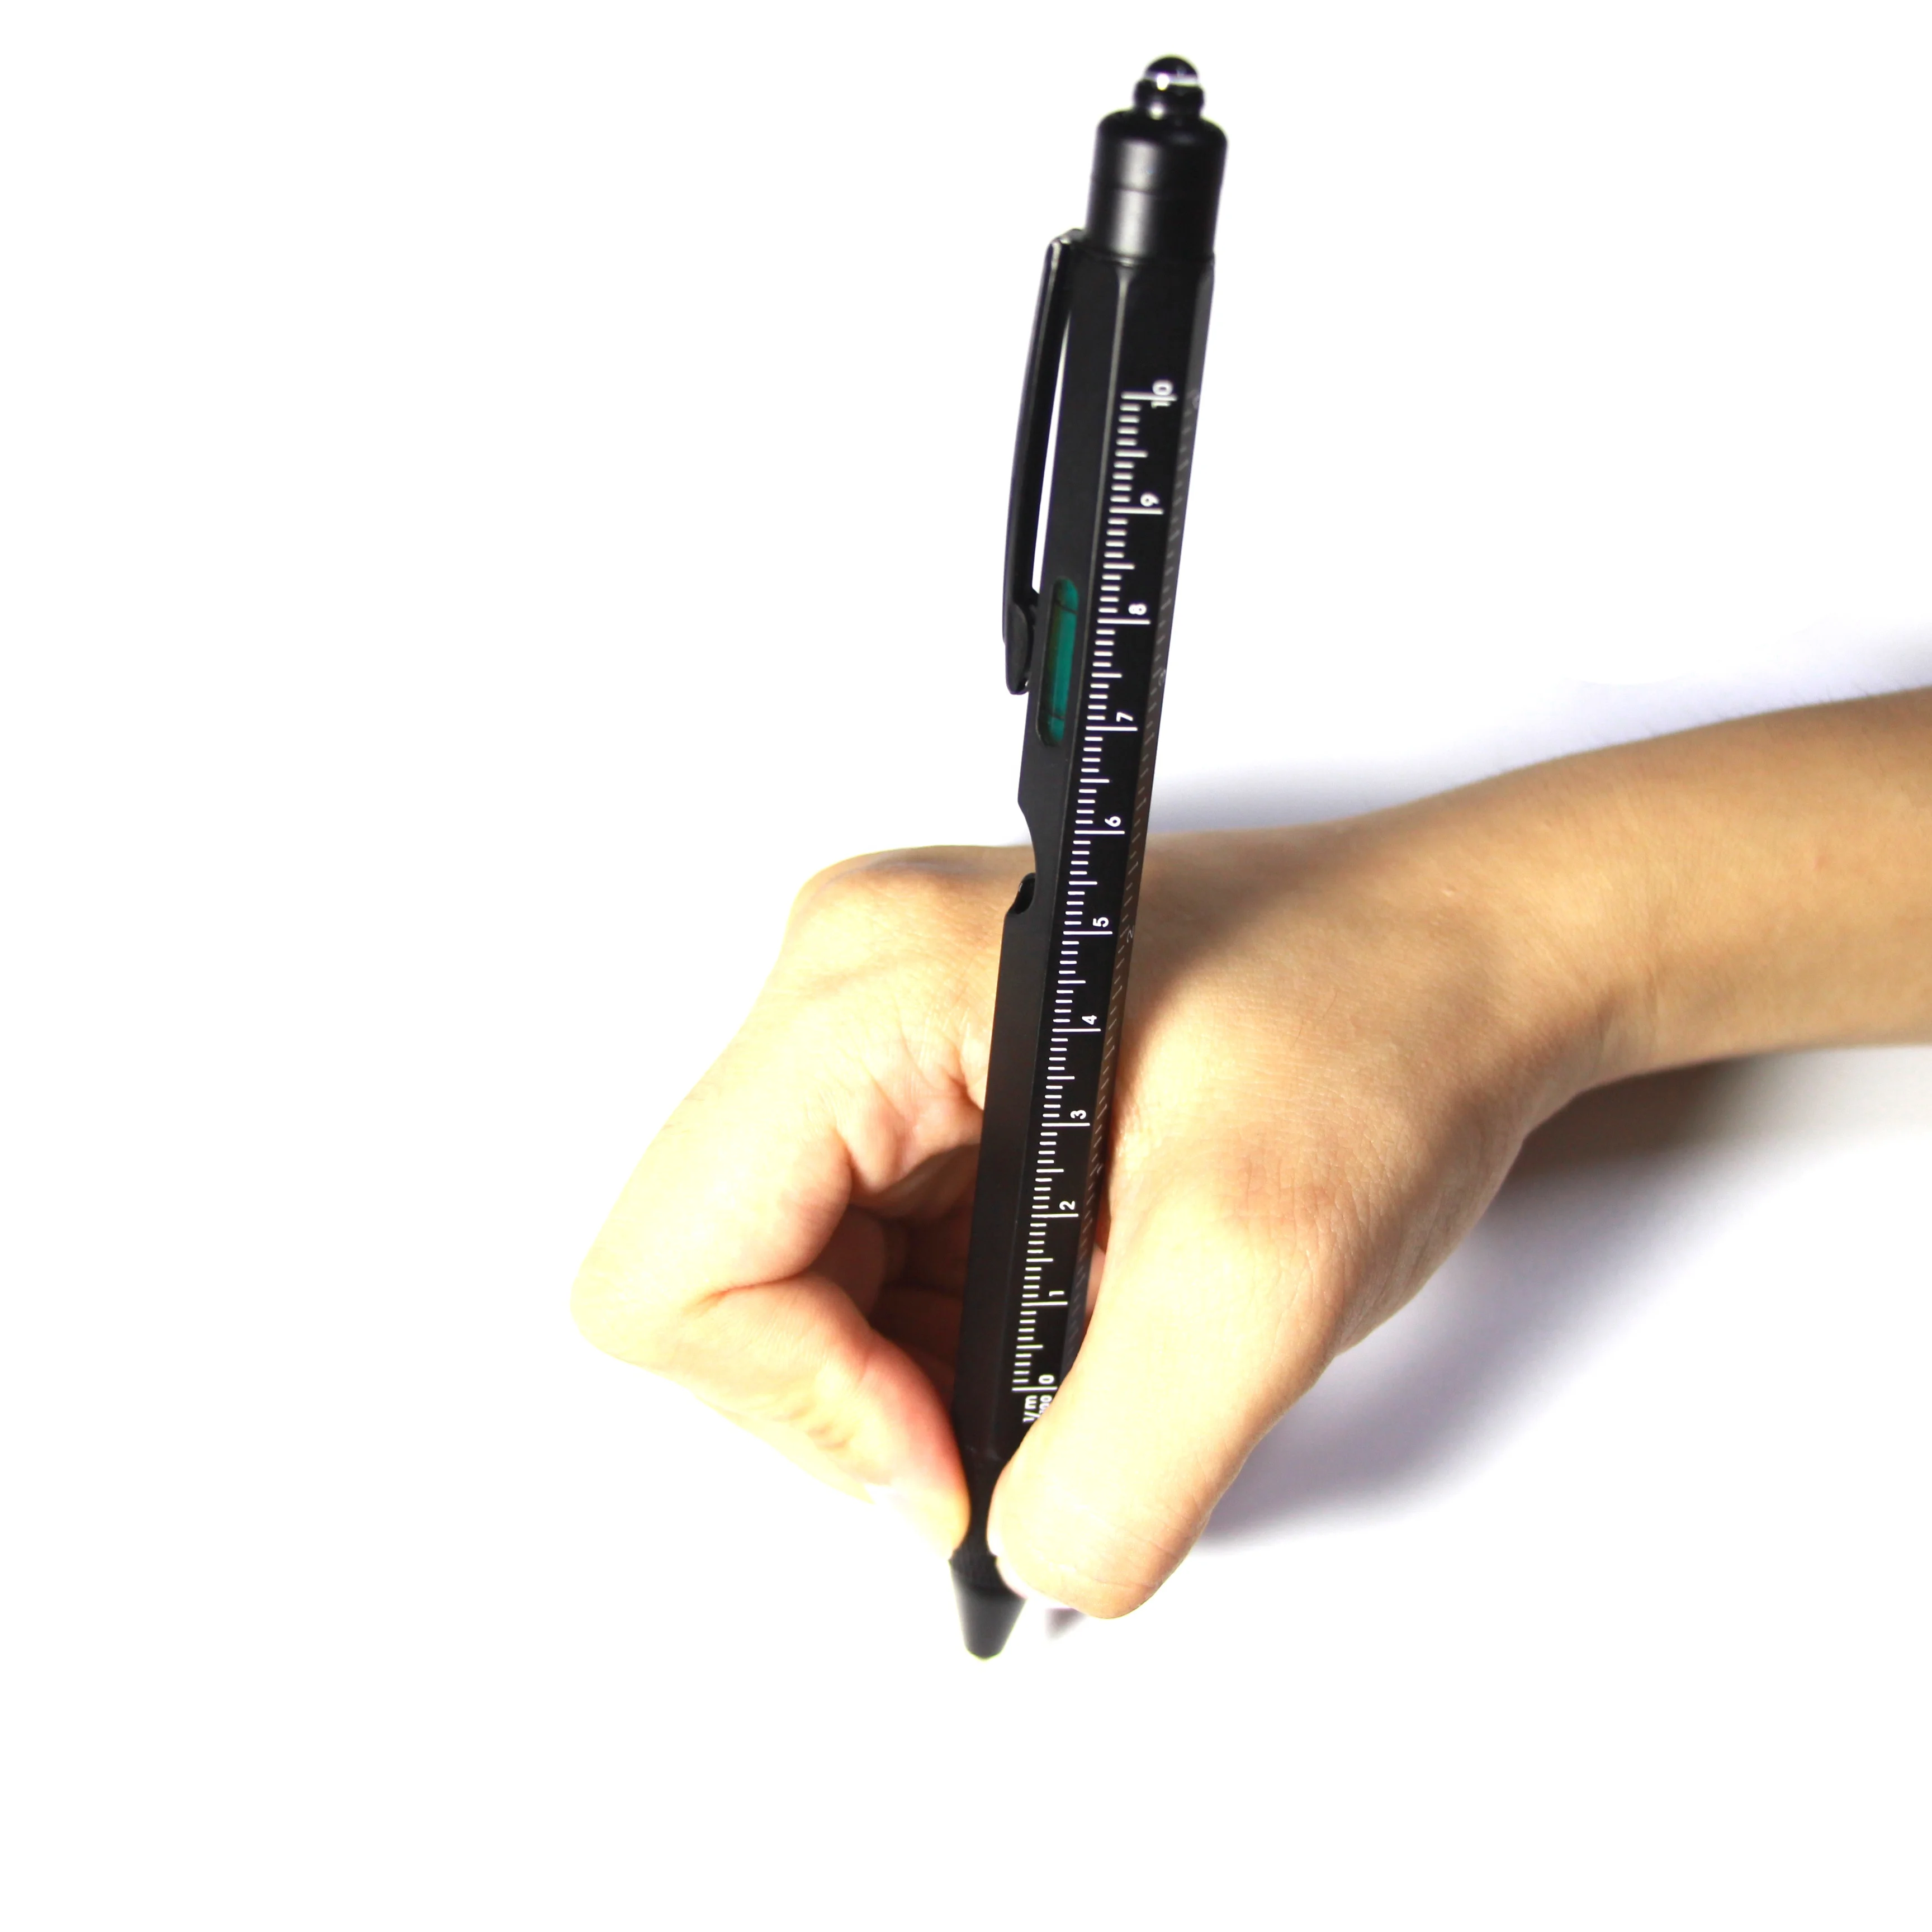 Специальная подарочная многофункциональная металлическая шариковая ручка 9 в 1 со светодиодной подсветкой и уровнем и отверткой